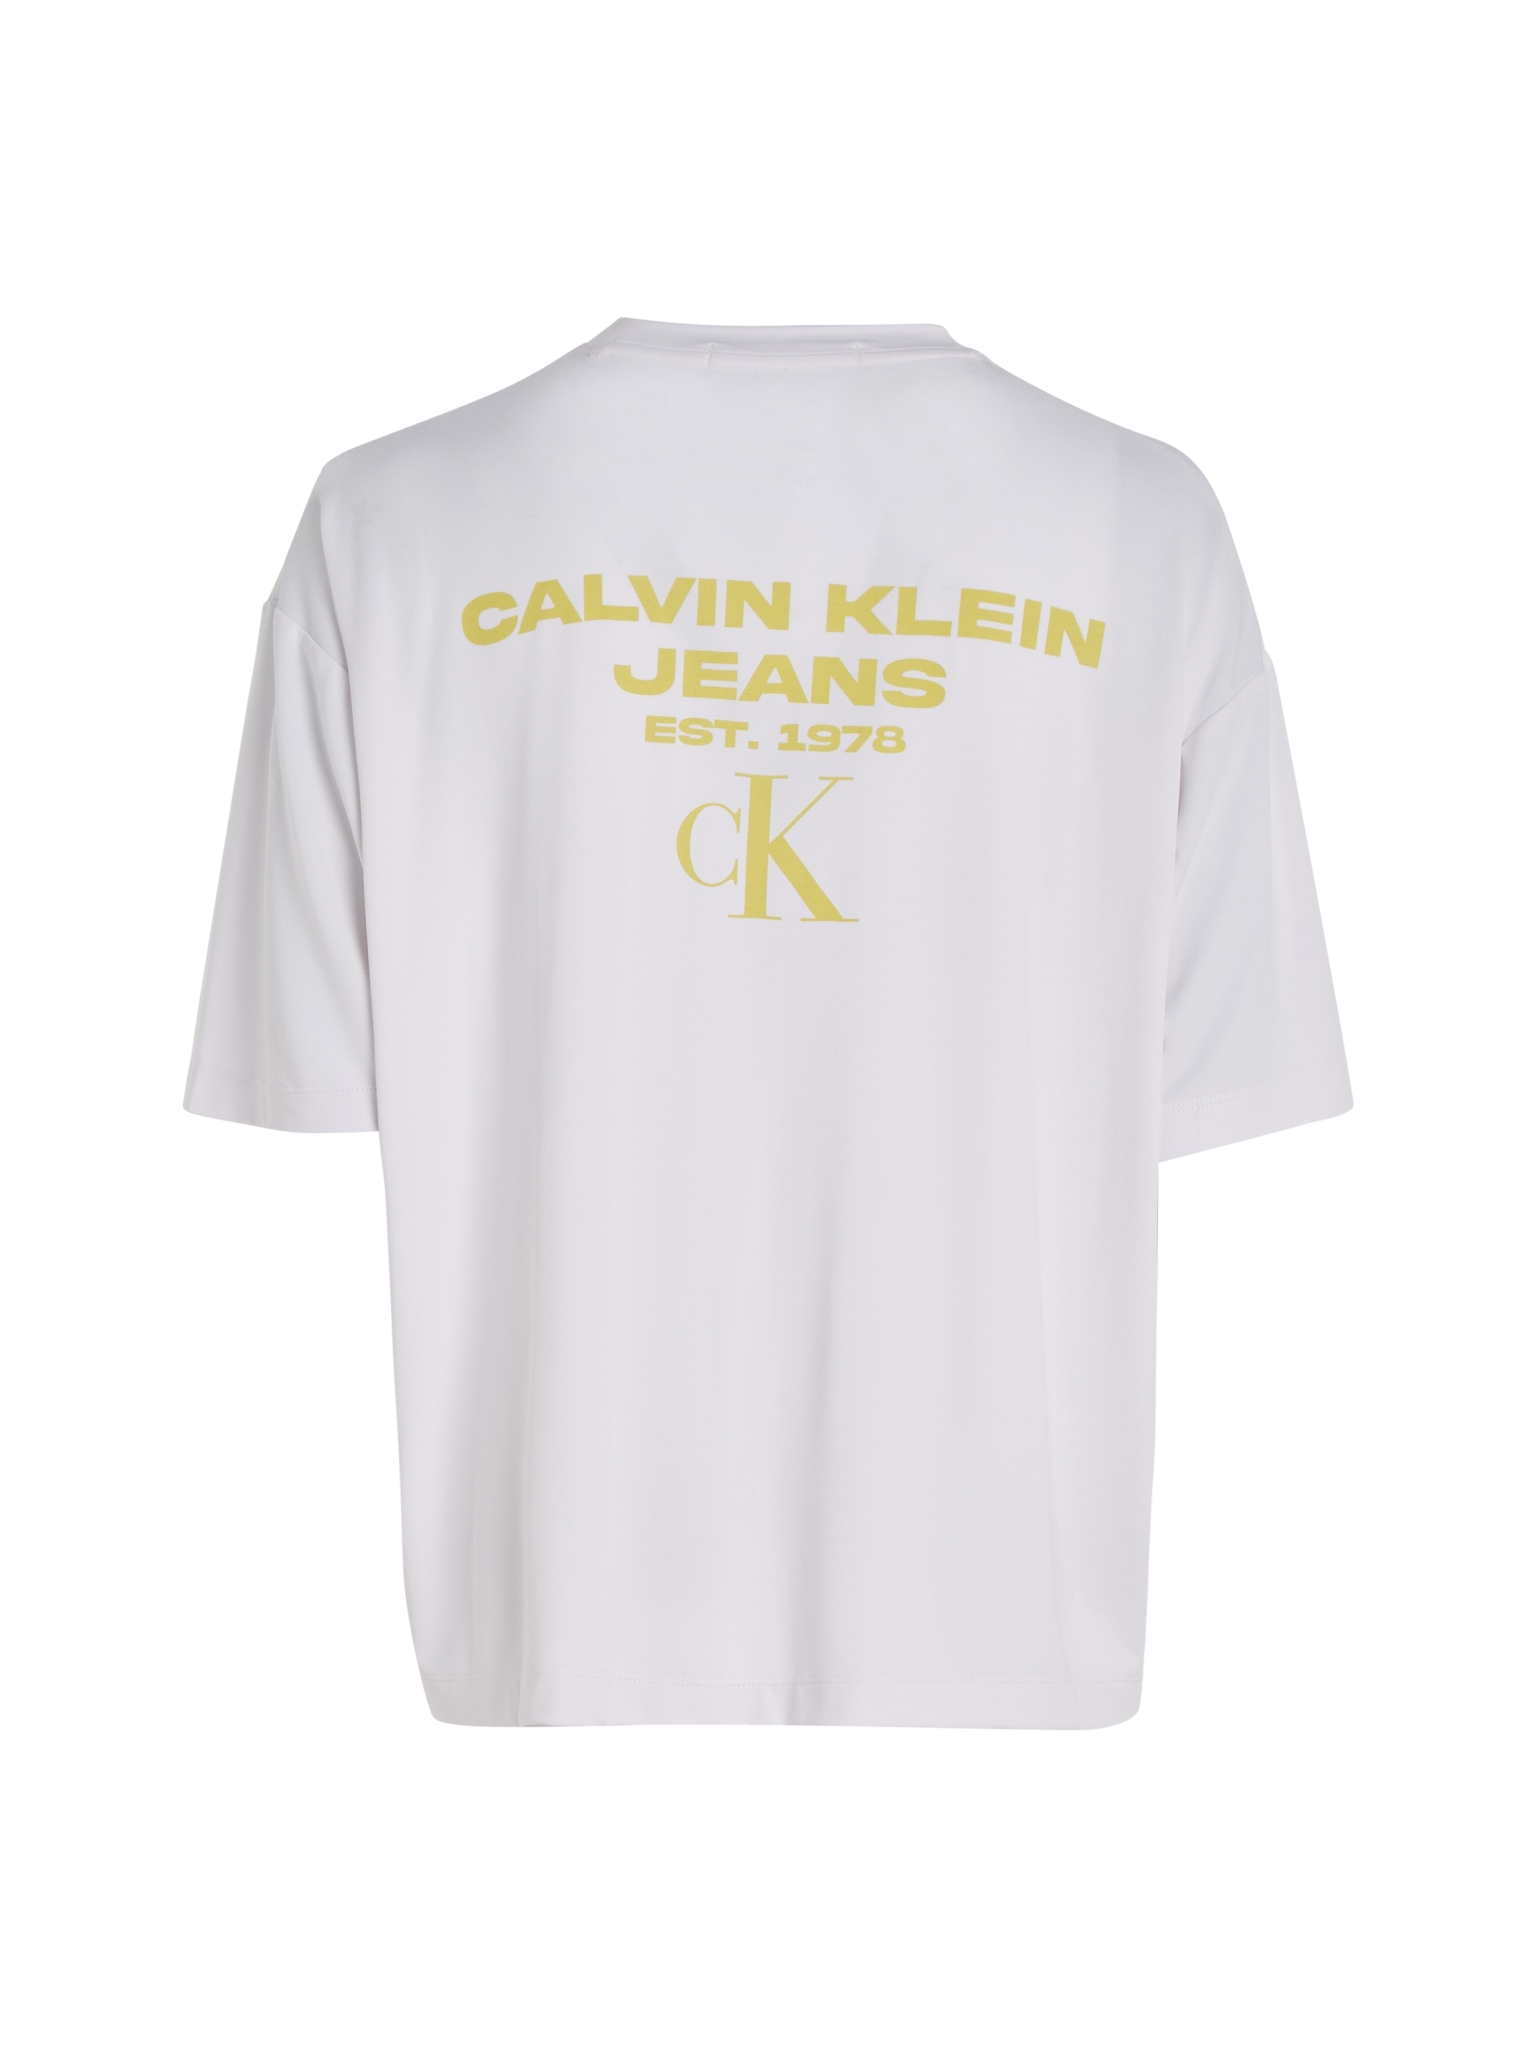 CALVIN KLEIN JEANS T-Shirt mit Print am Rücken 10704108